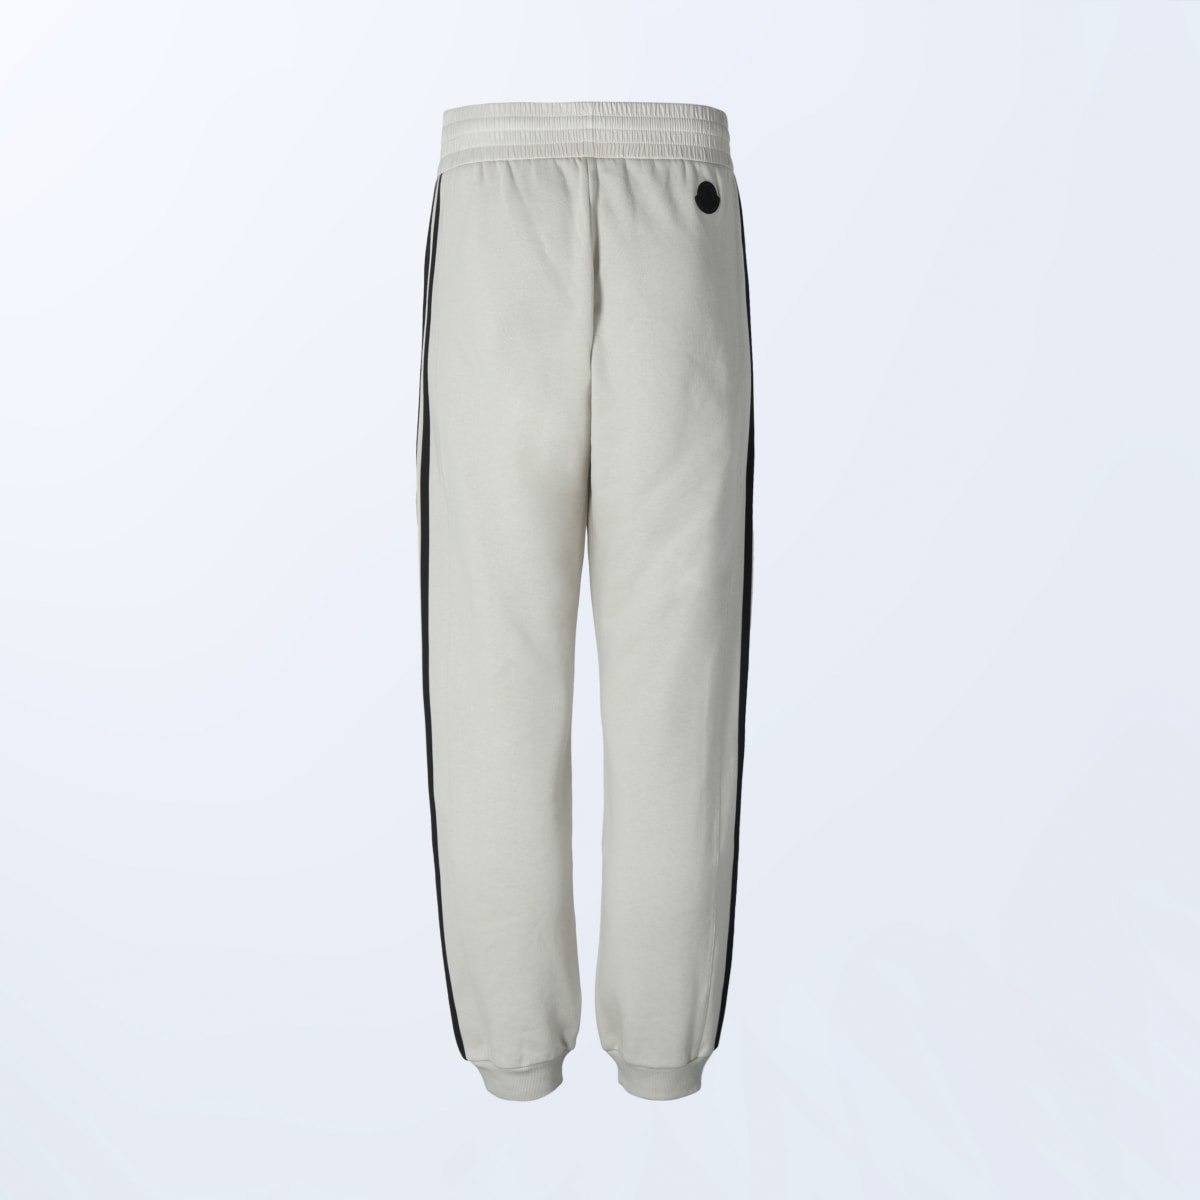 Adidas Pants Moncler. 7